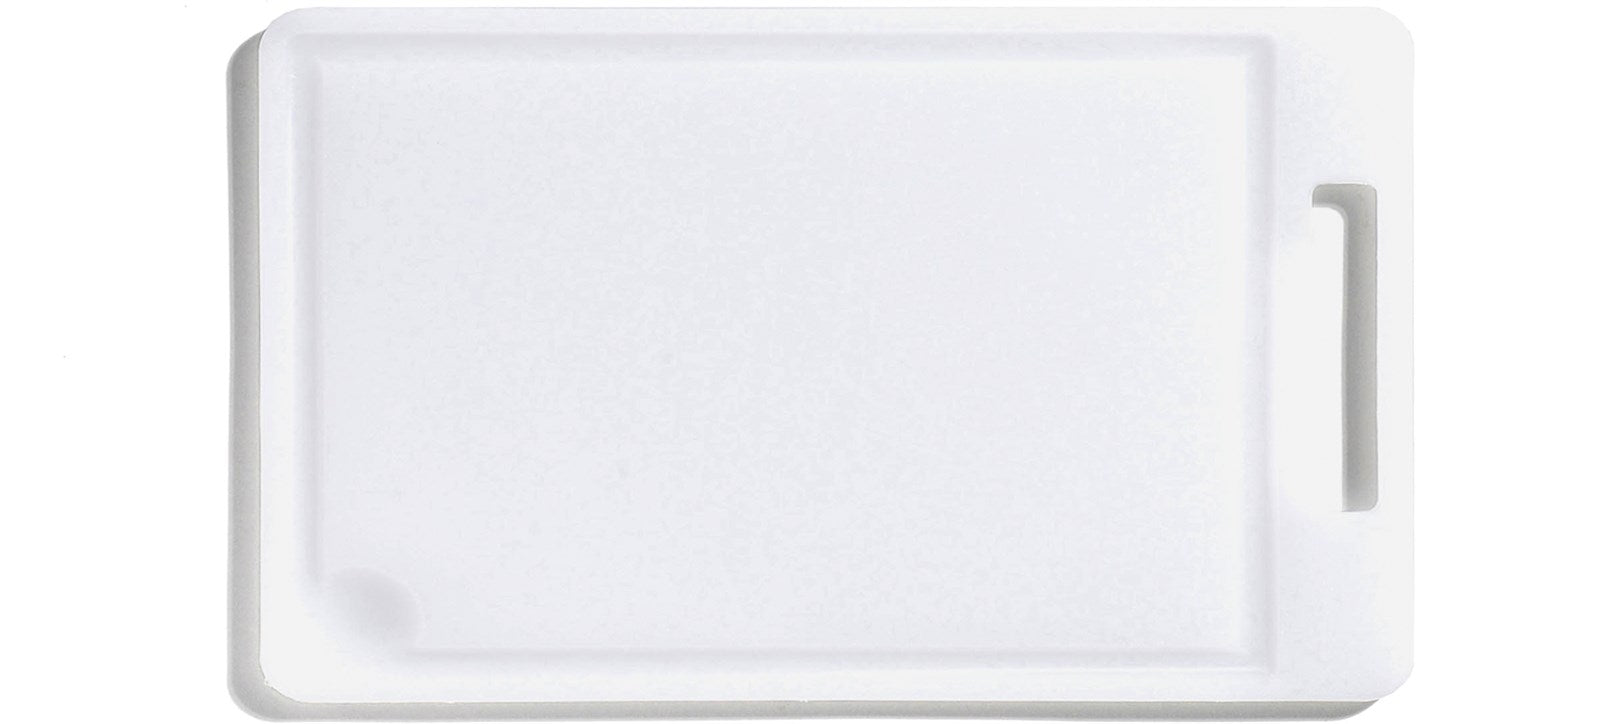 Schneidebrett 31x18cm weiss in Weiss präsentiert im Onlineshop von KAQTU Design AG. Schneidbrett ist von Demolli SpA